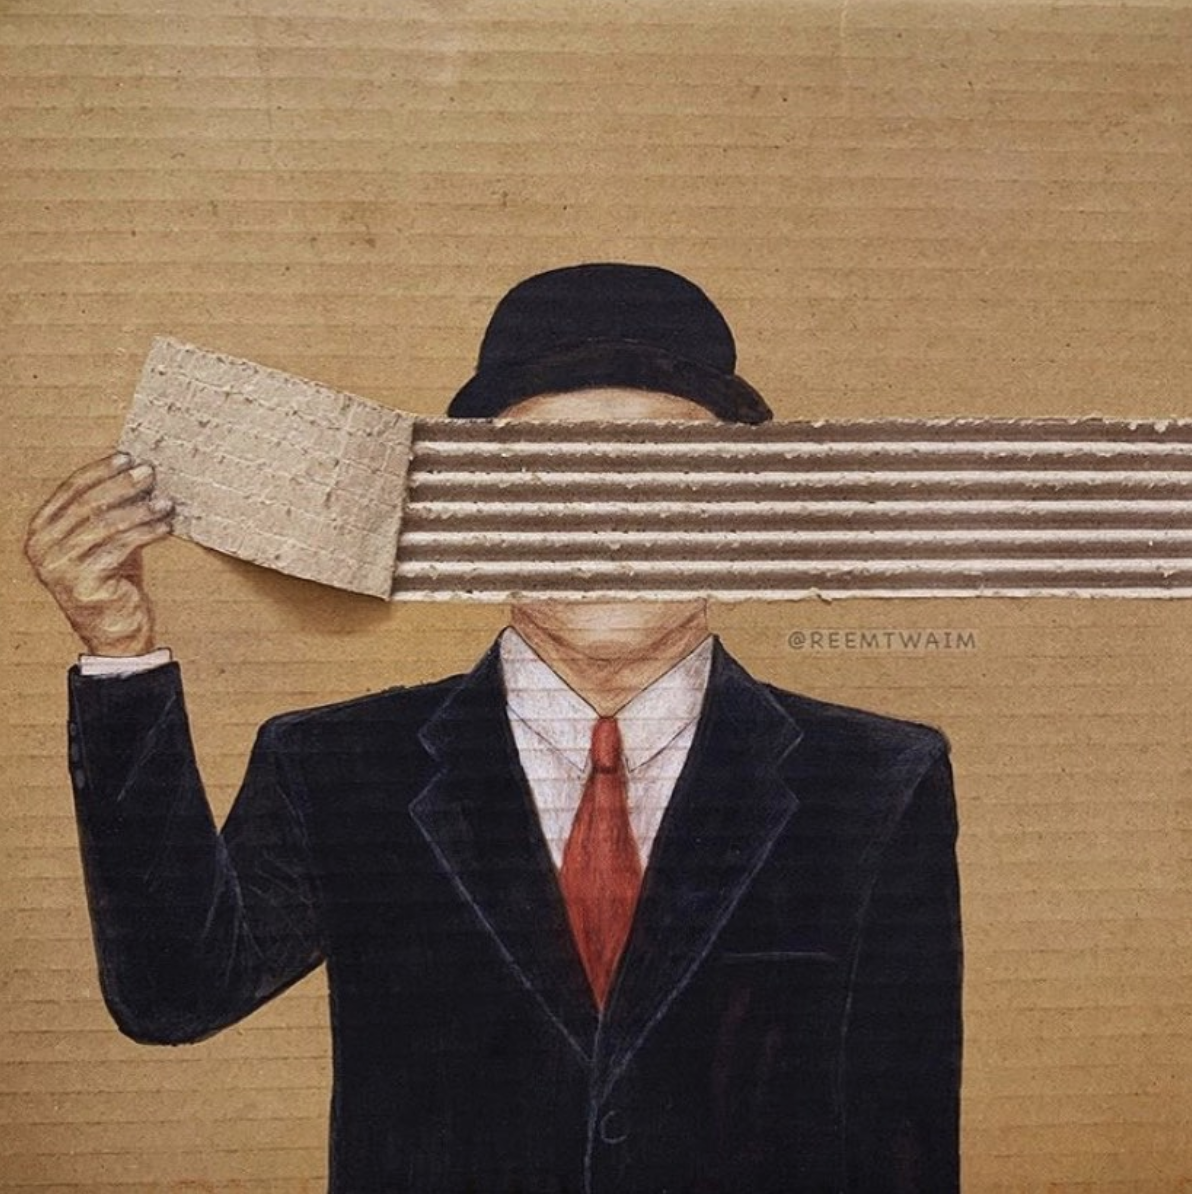 Cardboard illustration by Reem Altwaim